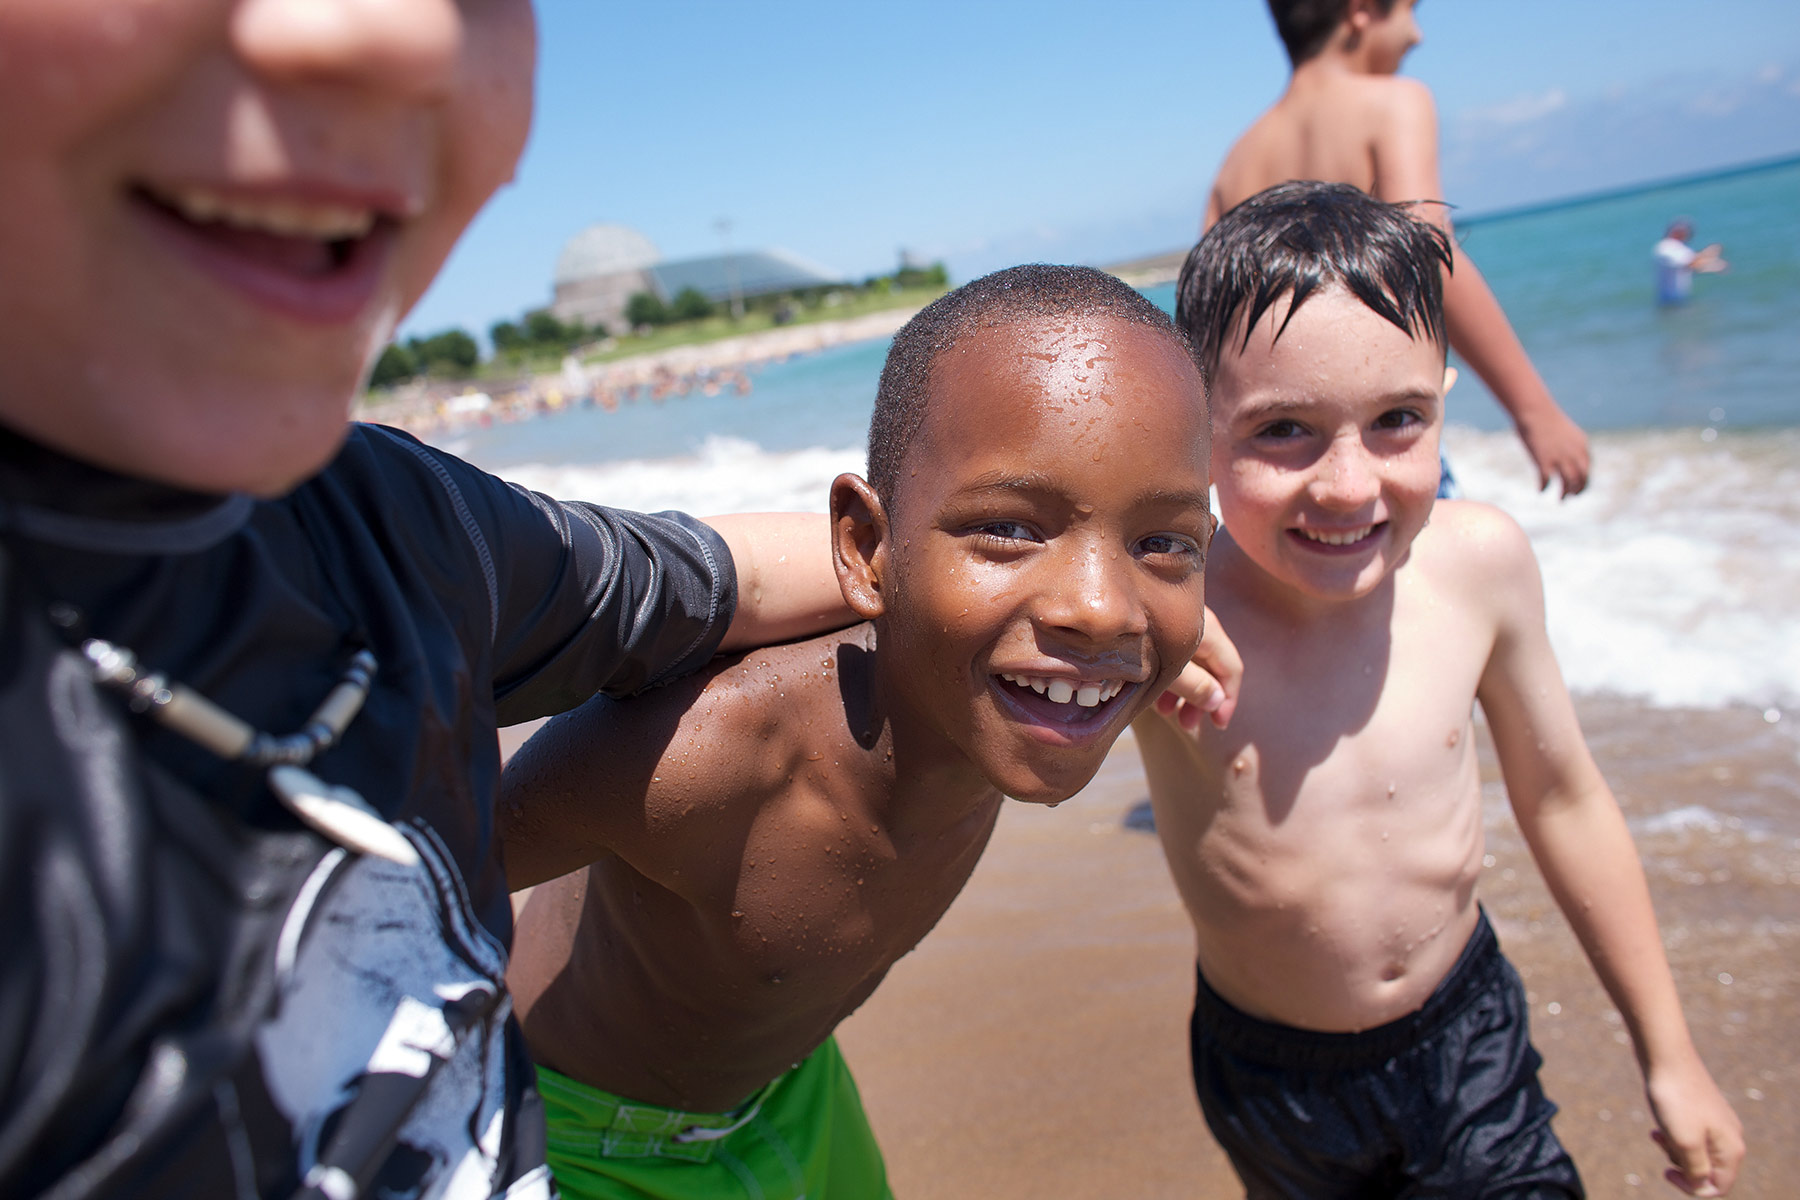 Four-little-boys-playing-on-a-beach-near-the-edge-of-the-ocean